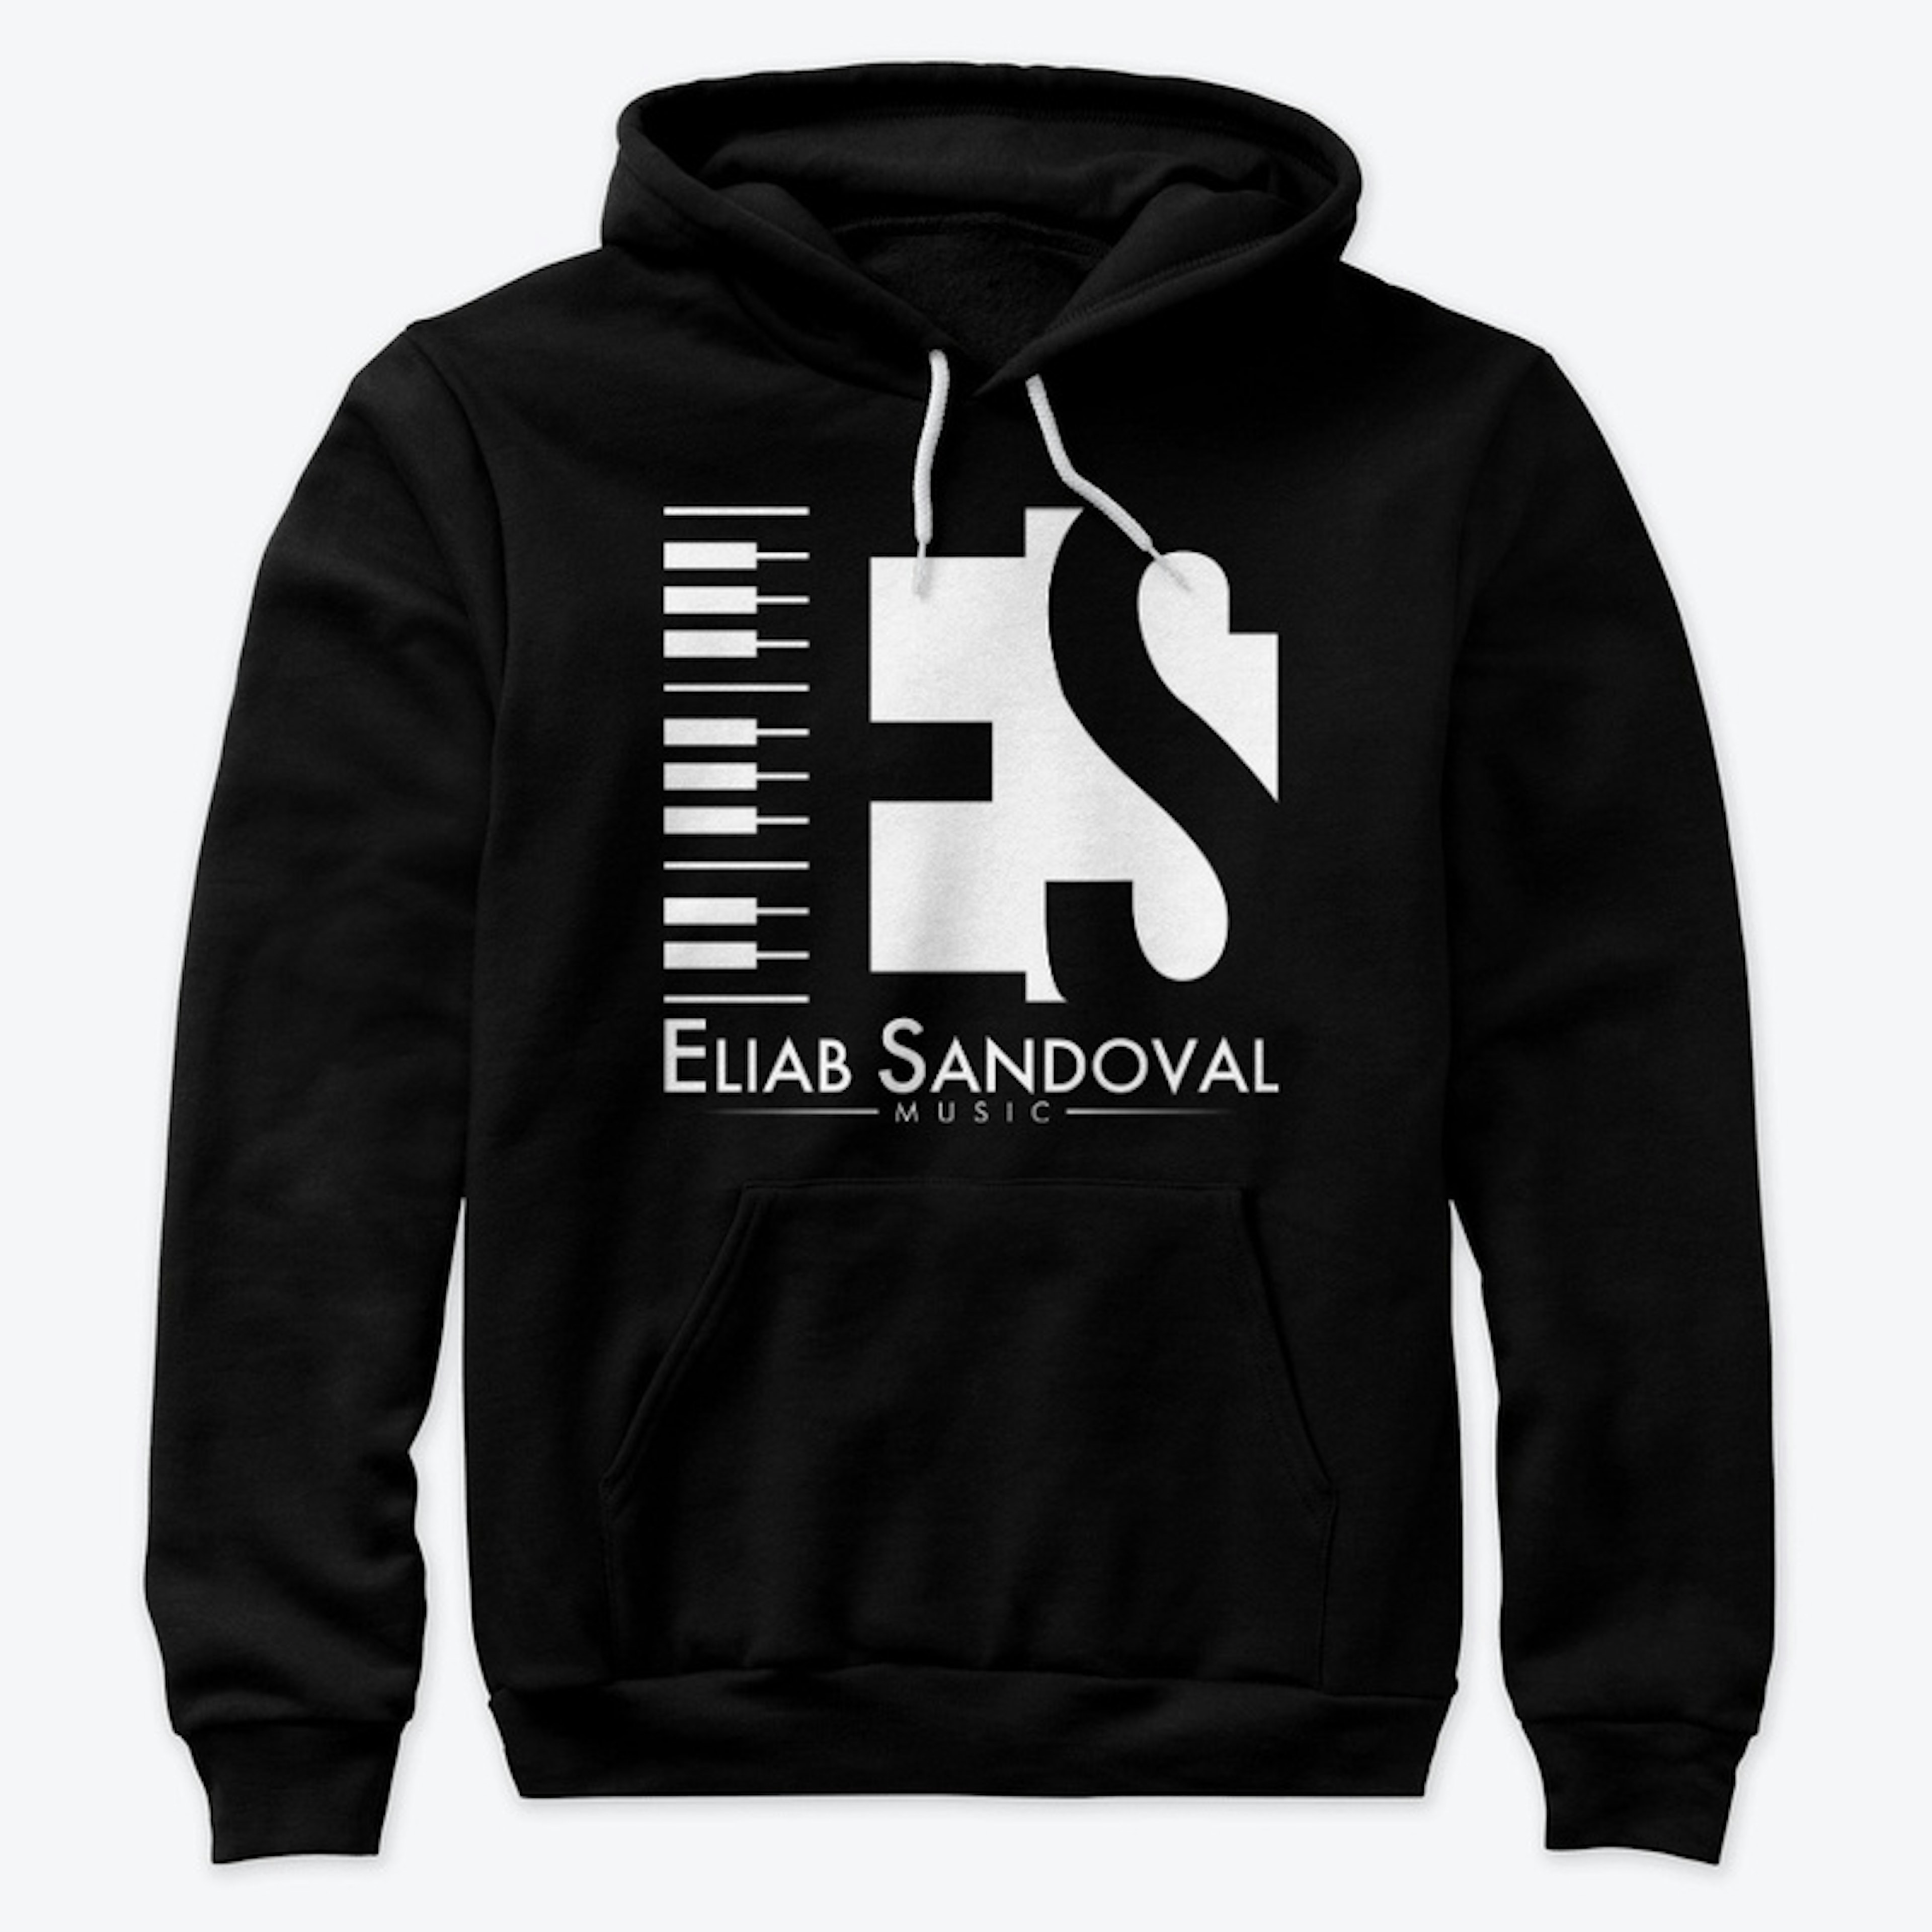 Eliab Sandoval Music Hoodie 